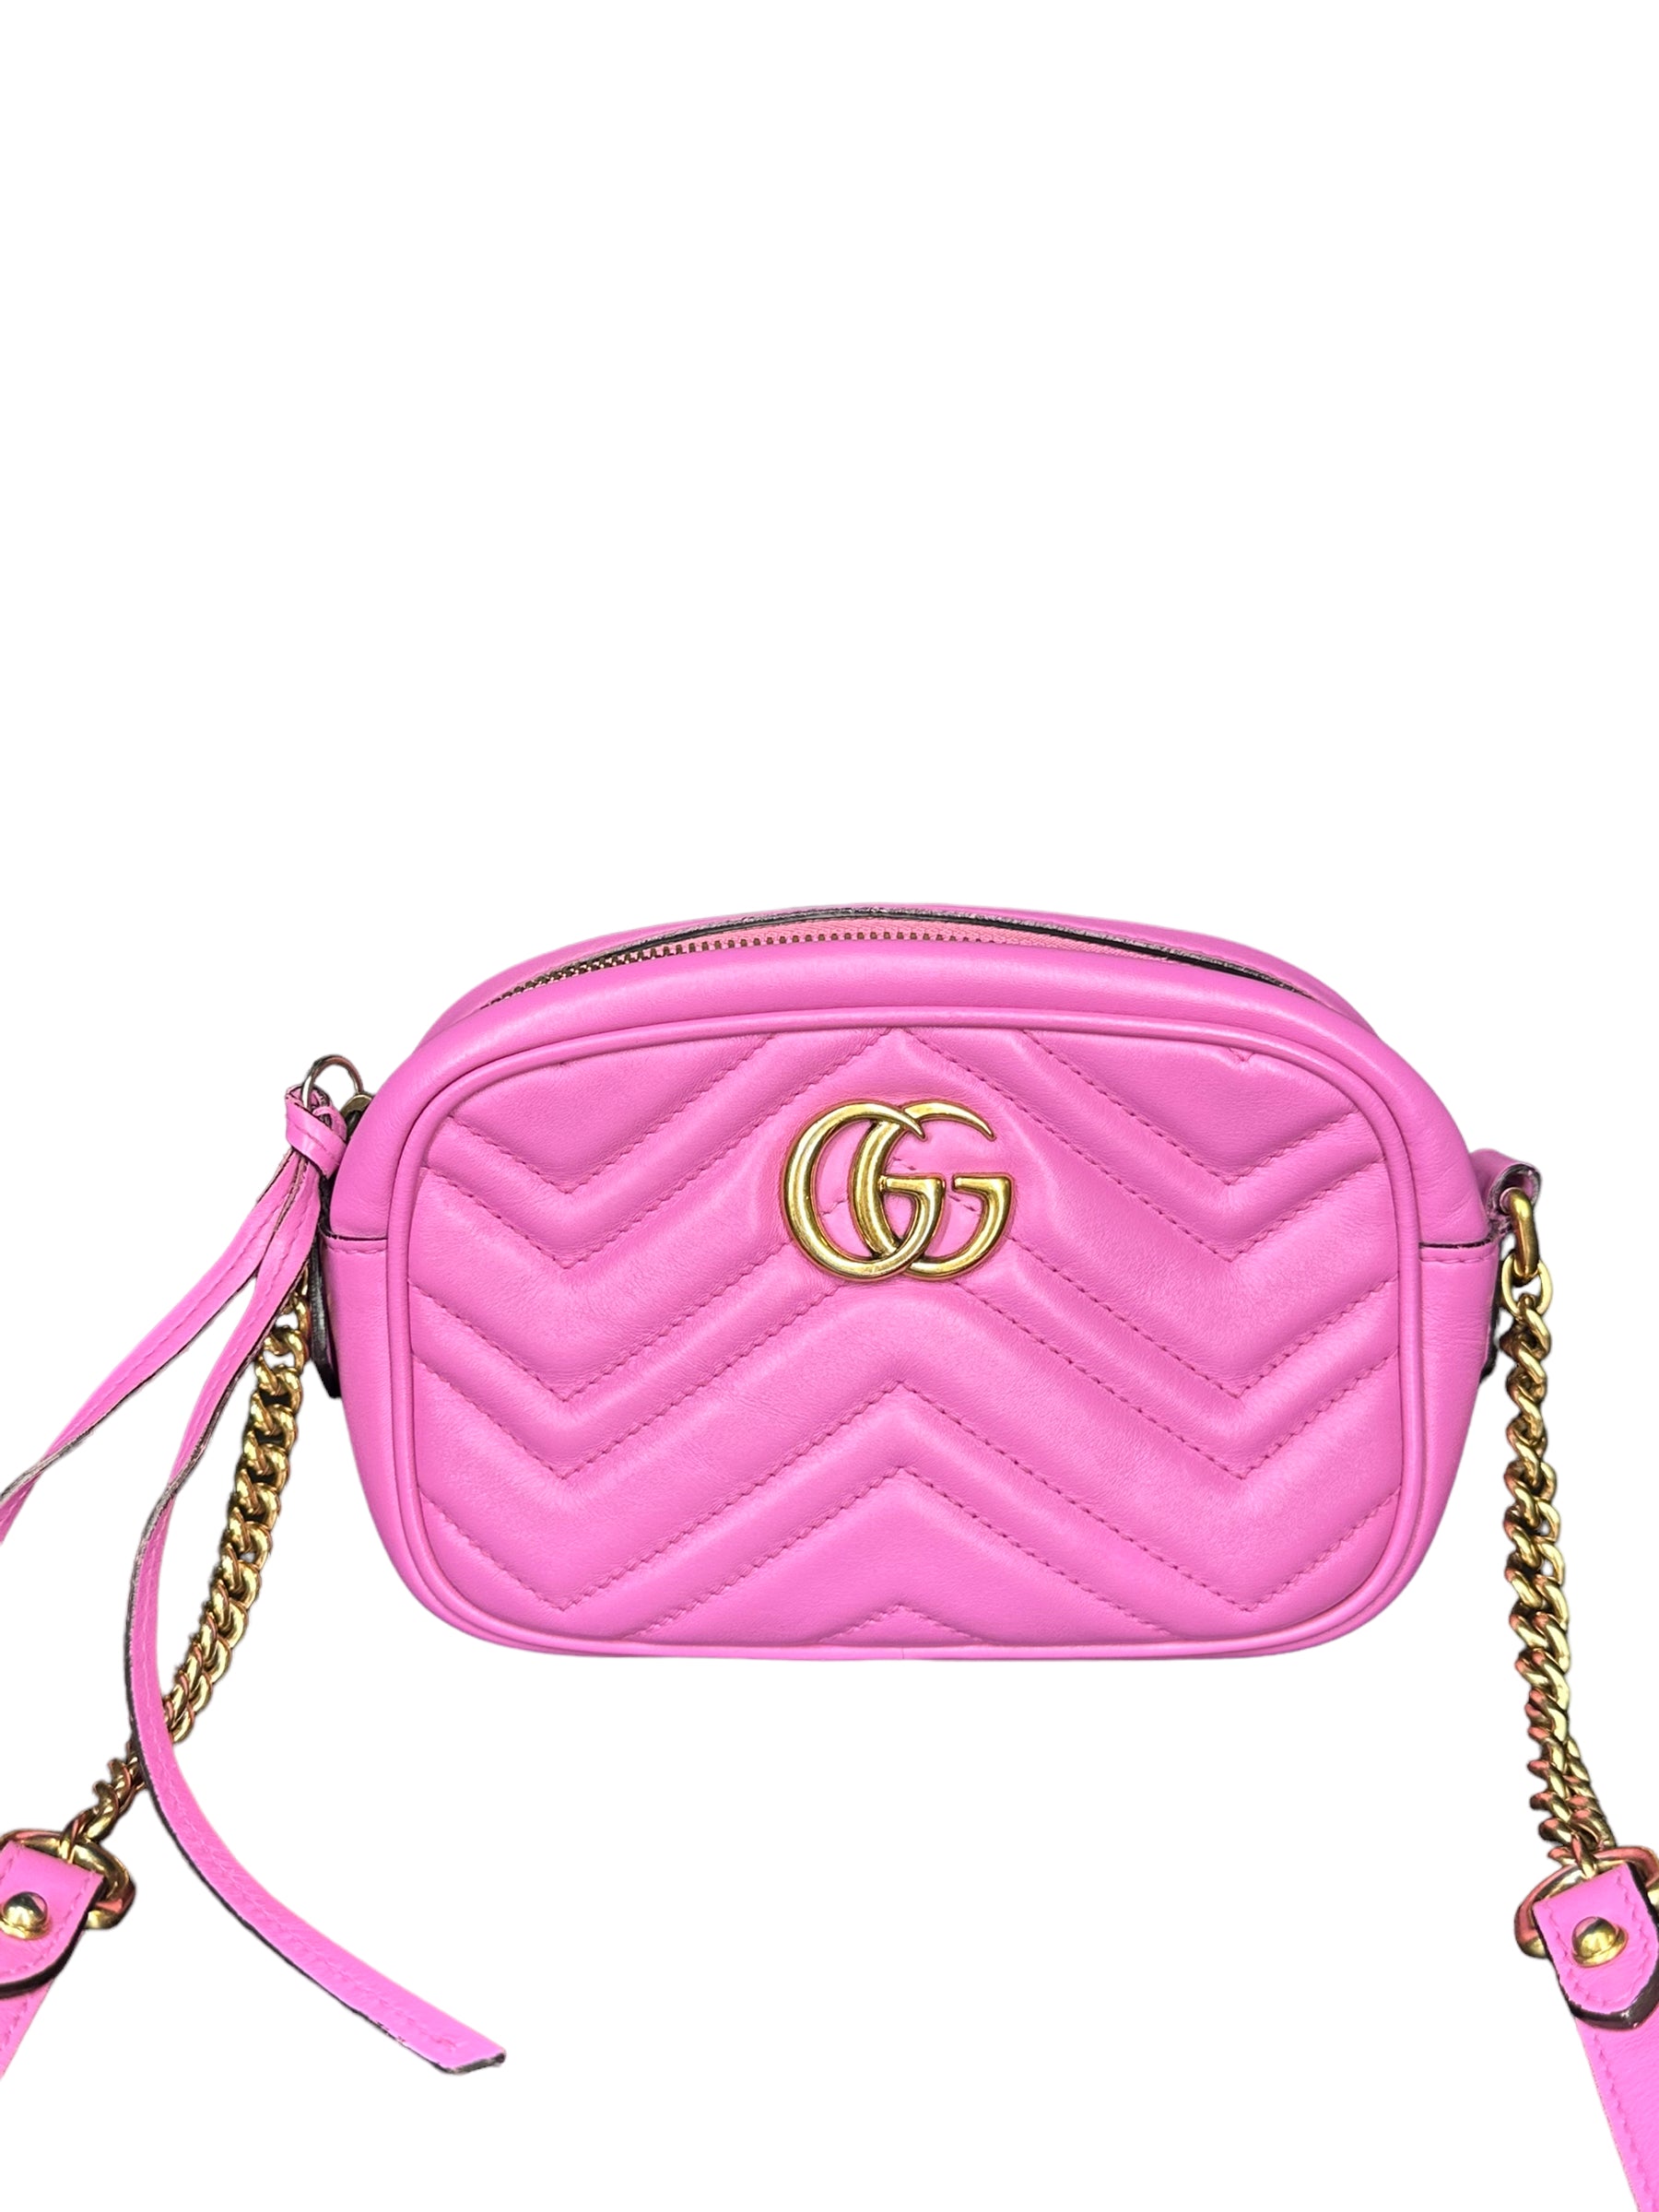 GG Marmont Small Raffia Shoulder Bag in Neutrals - Gucci